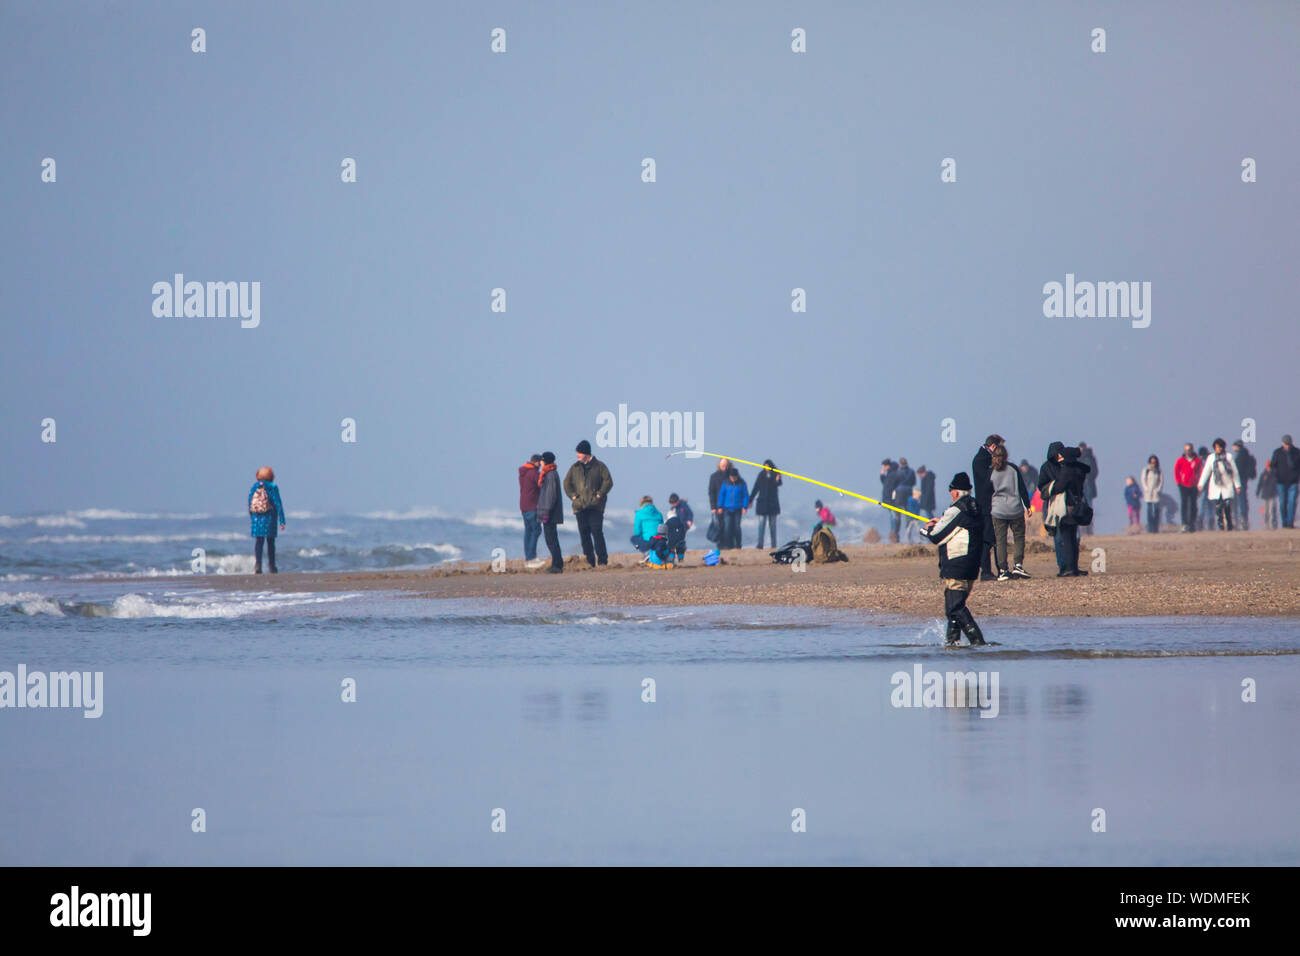 Pescadores en la costa, el Mar del Norte, playa de arena, Egmond aan Zee, Holanda Septentrional, Holanda, Foto de stock